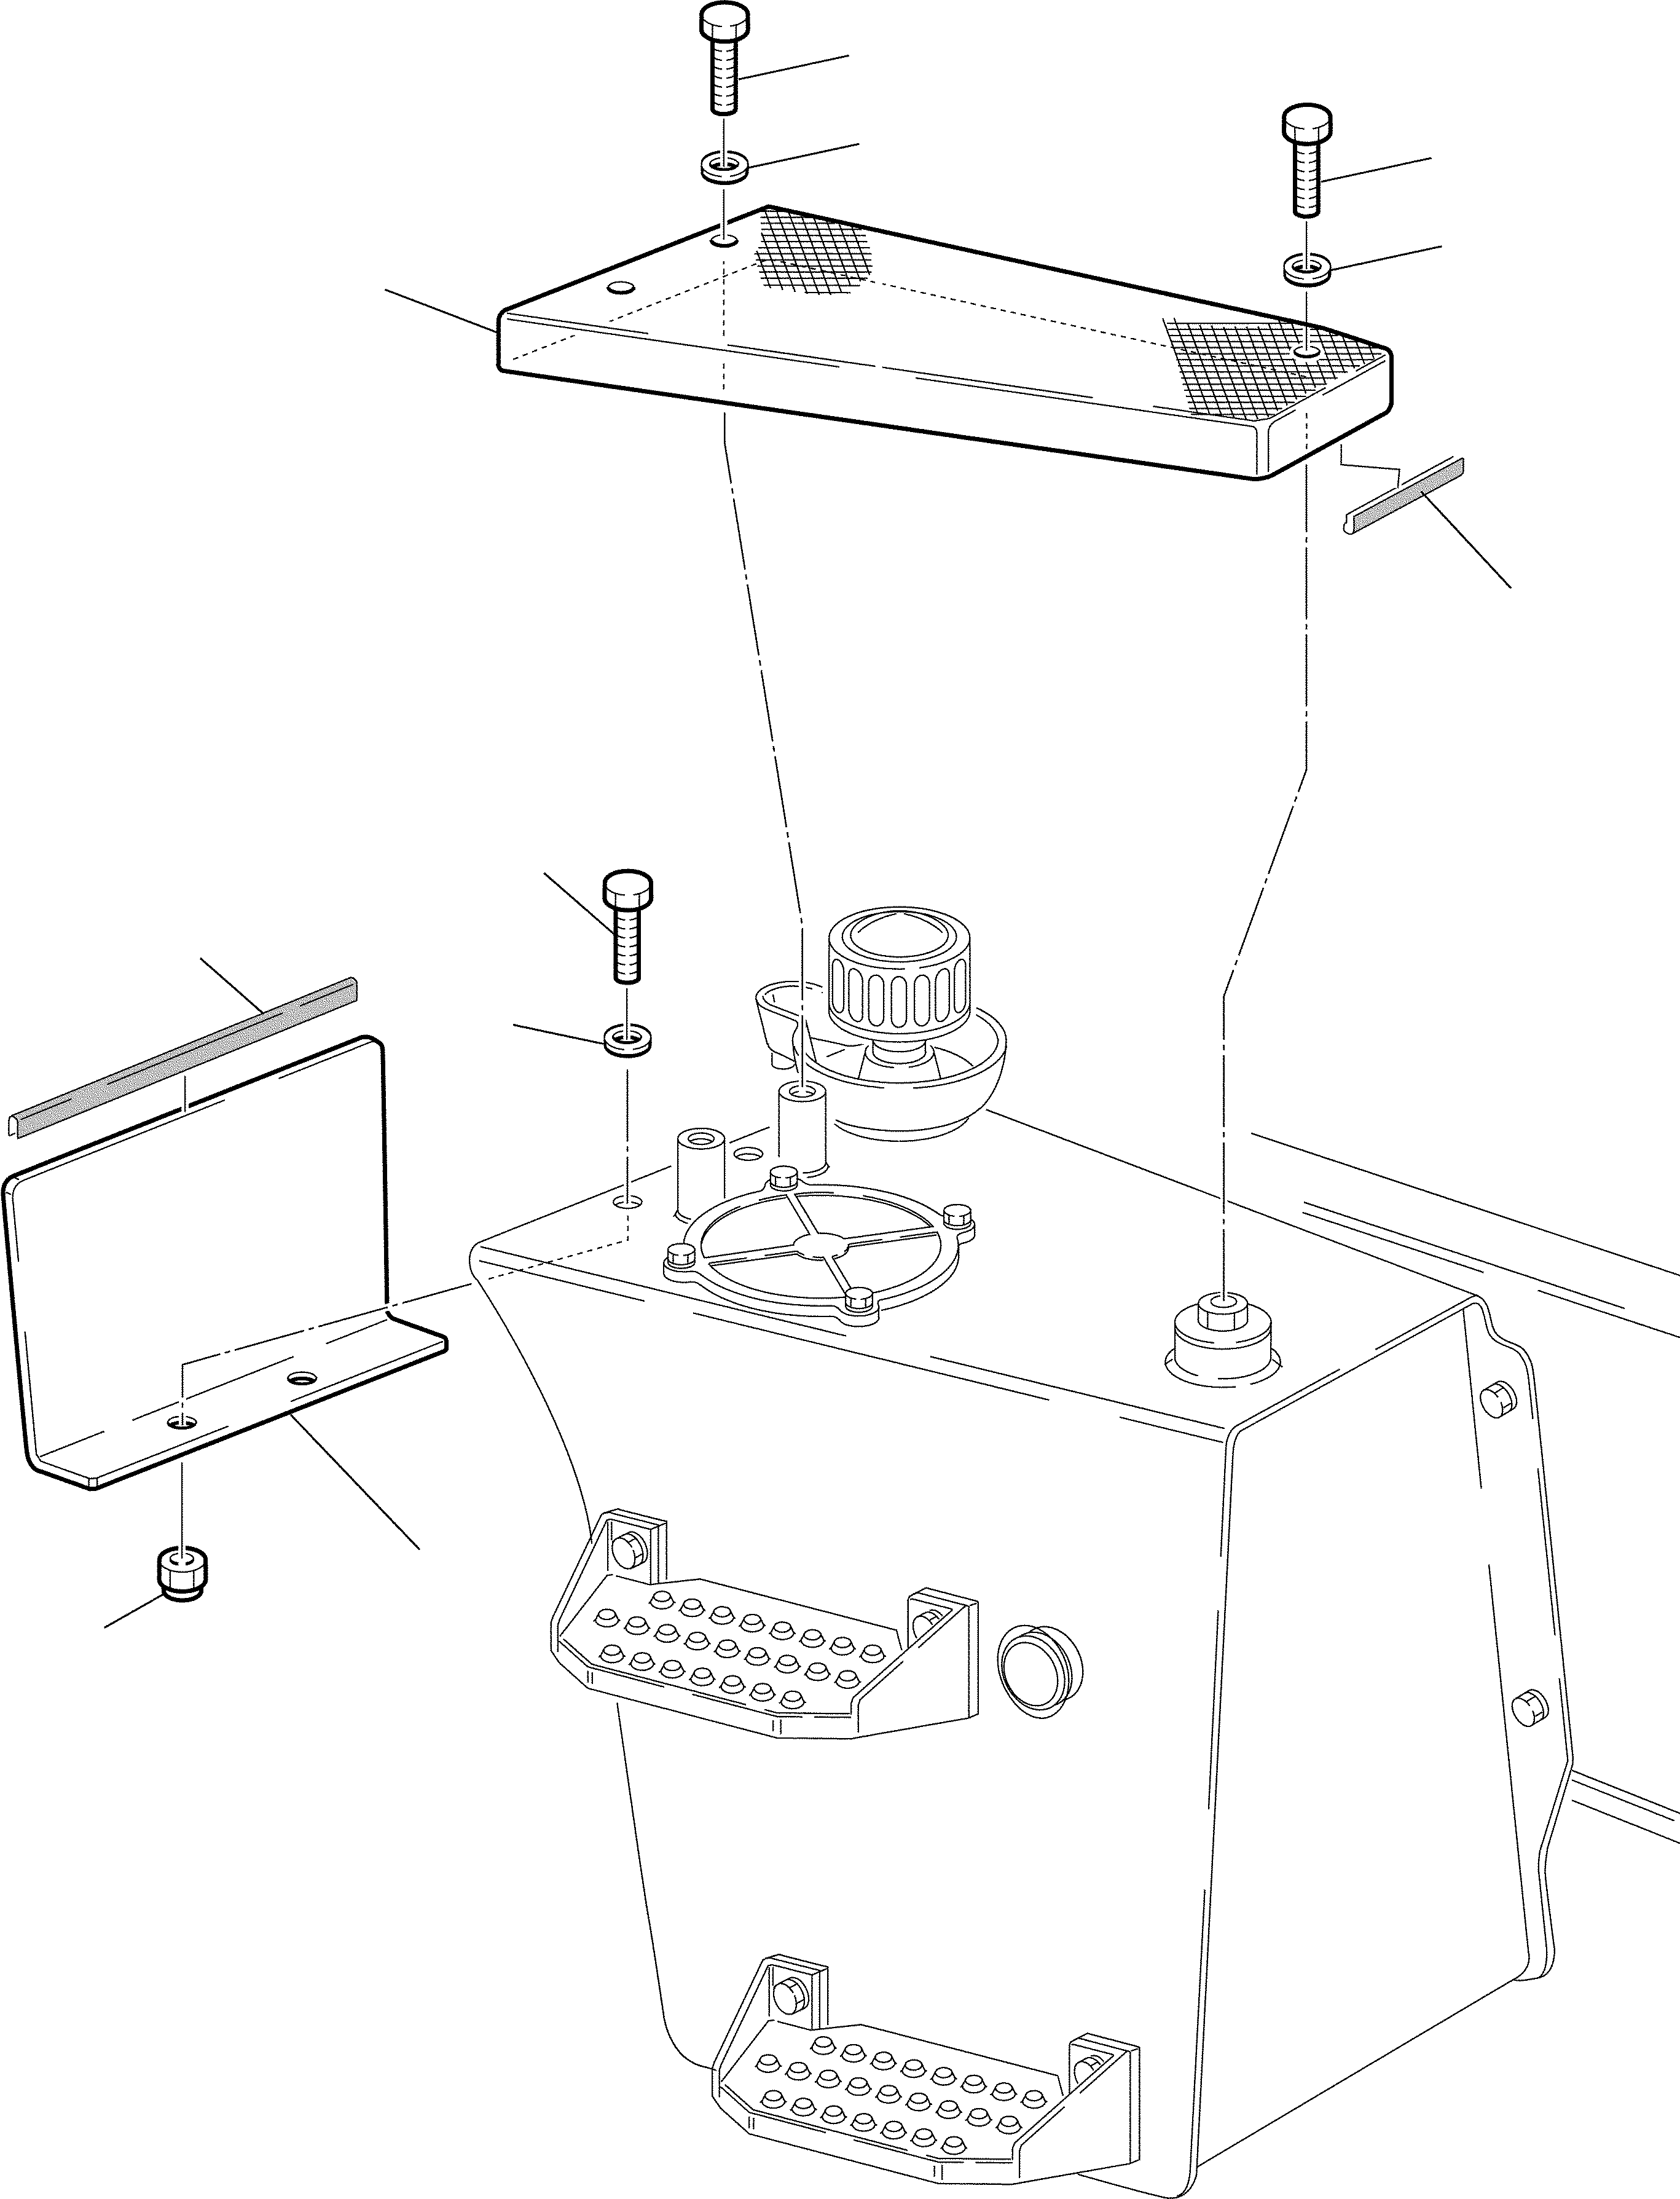 2. FLOOR BOARD HYDRAULIC TANK [6010] - Komatsu part WB97S-2 S/N 97SF11205-Up [wb97s_2c]